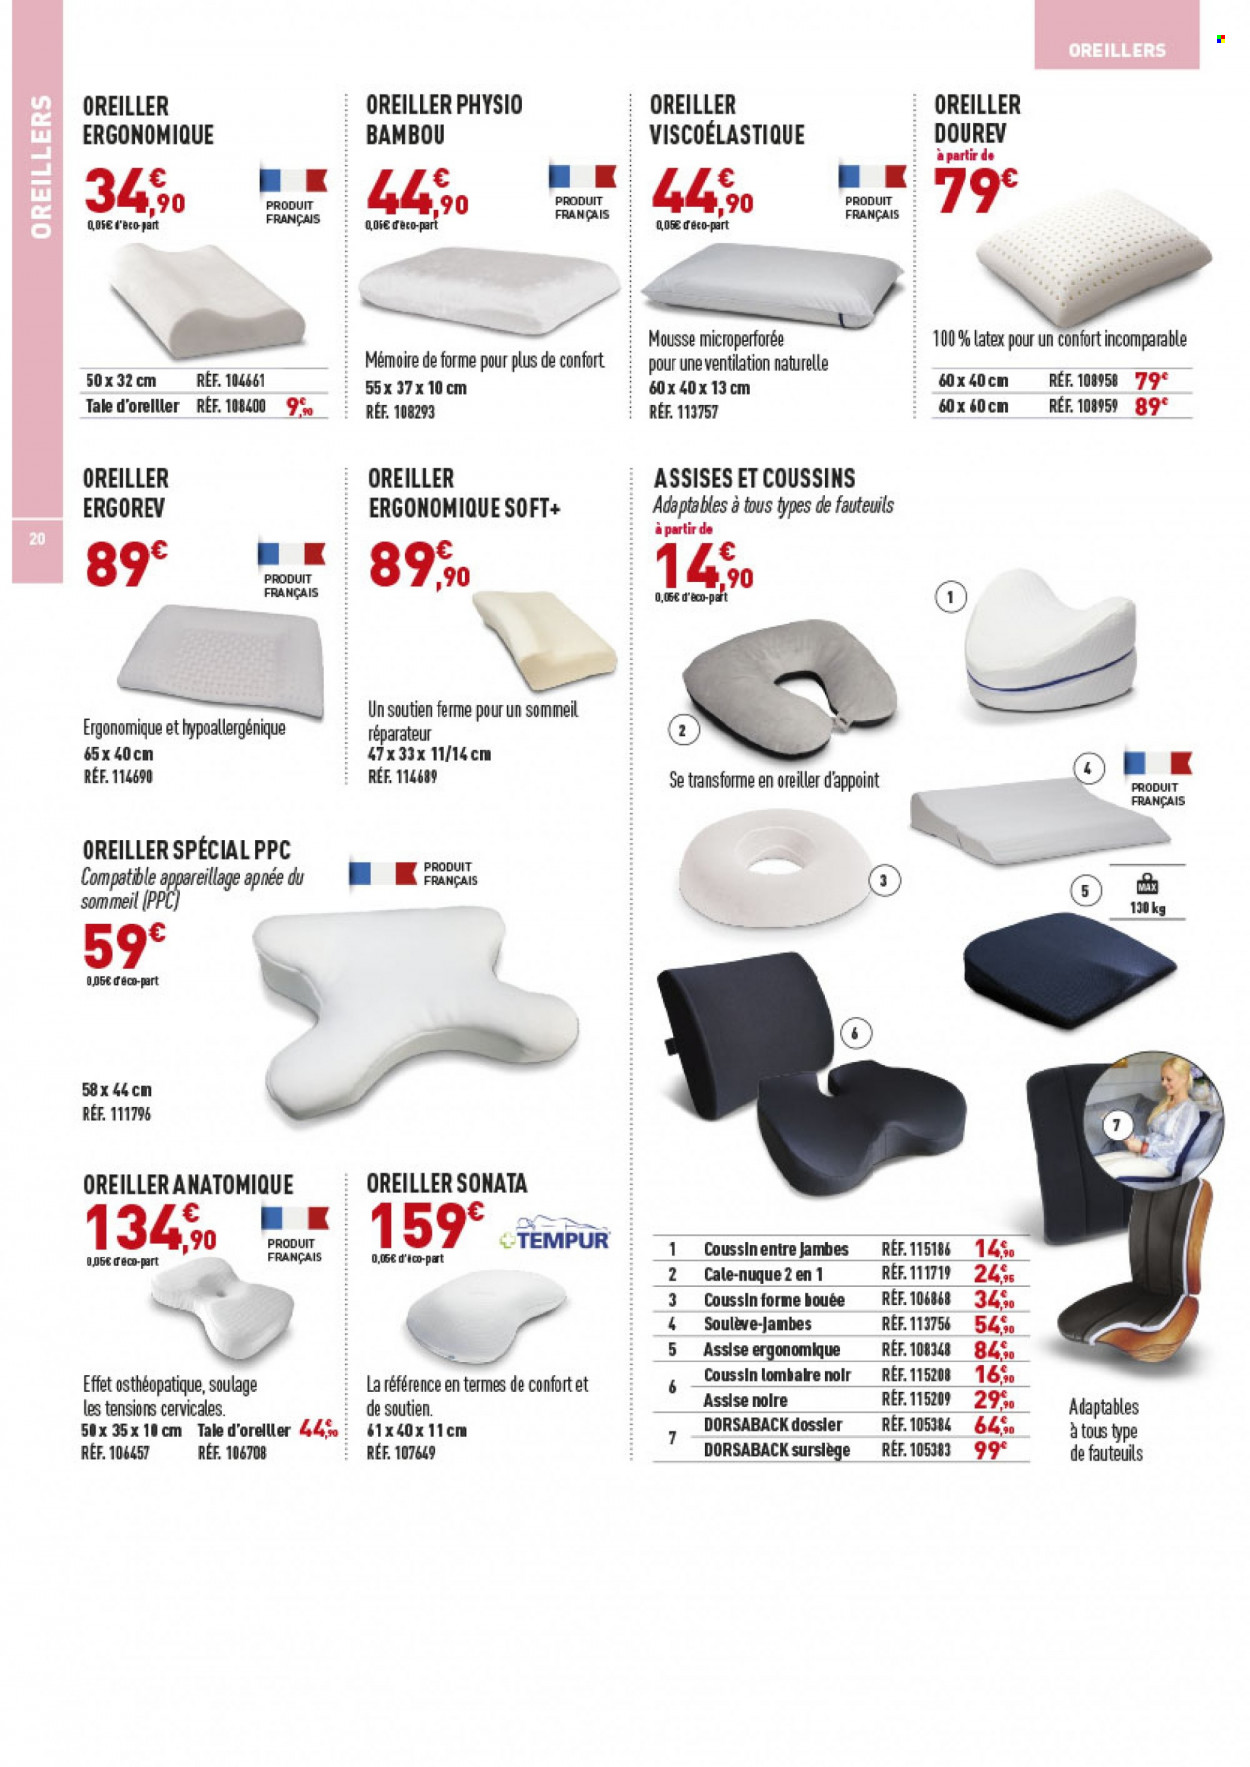 Catalogue Bastide Le Confort Médical. 